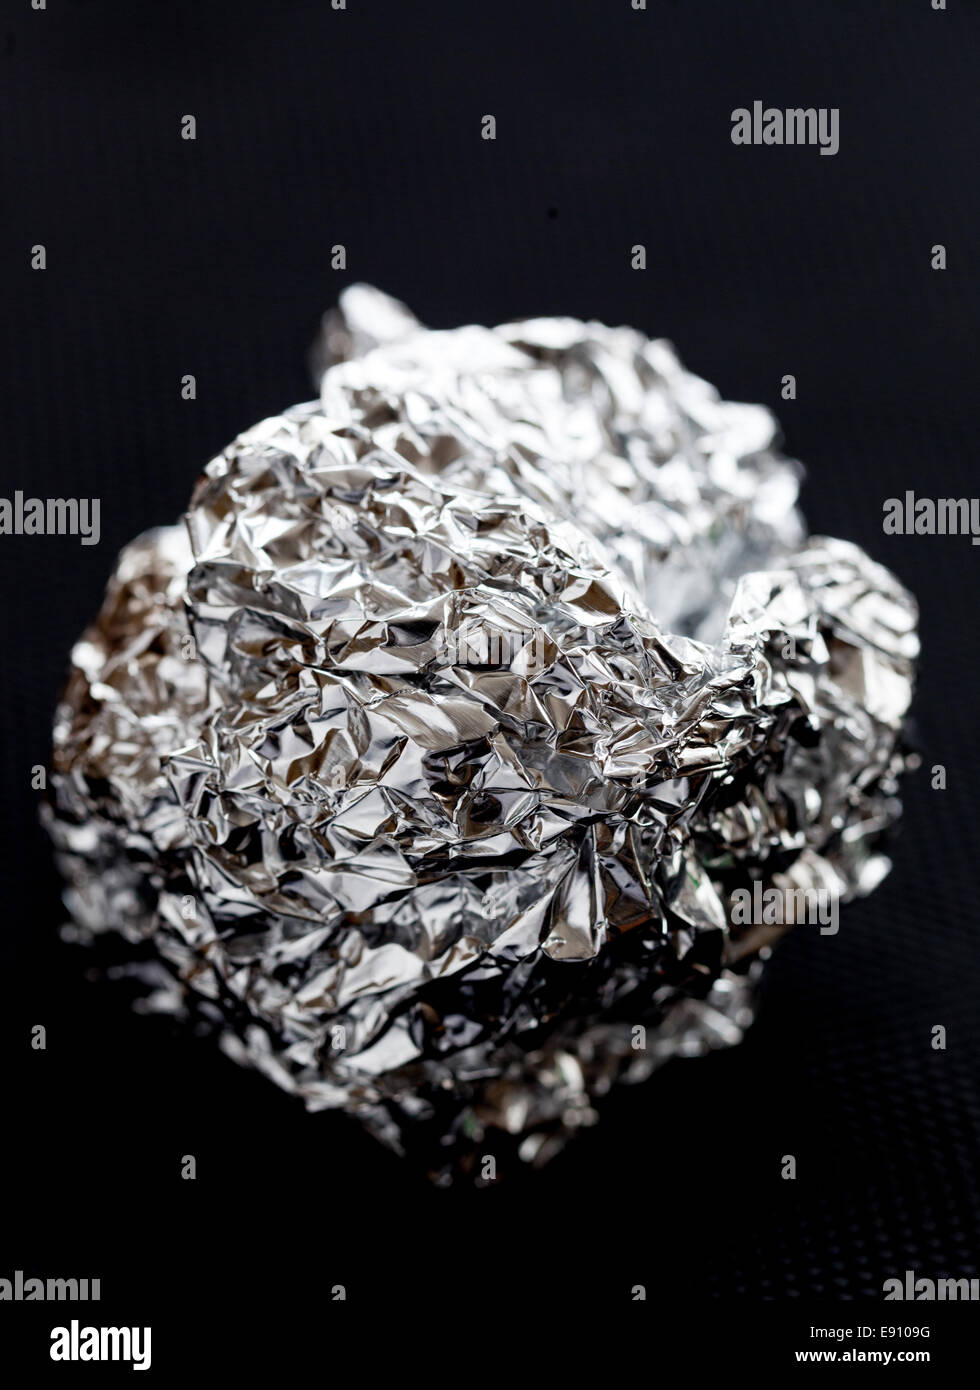 An aluminum foil ball. Stock Photo